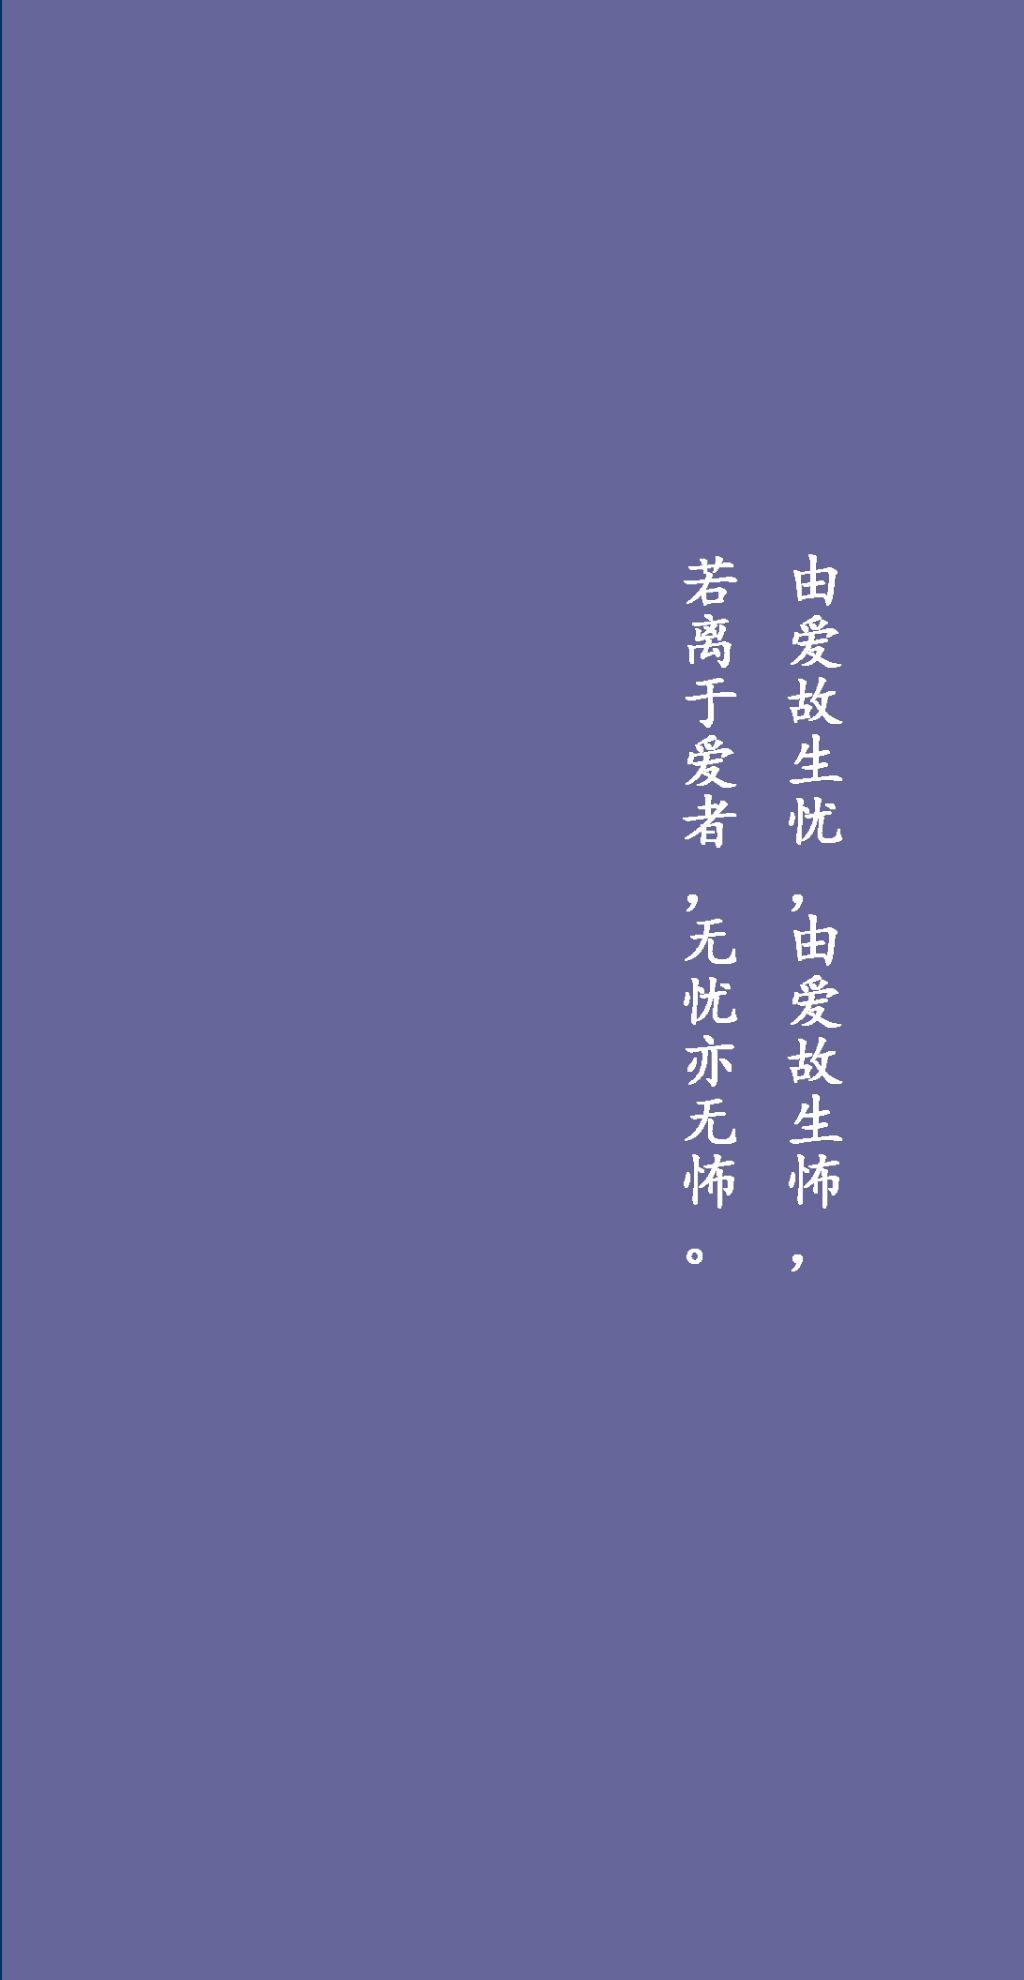 纯色壁纸背景图:佛经里的那些经典句子